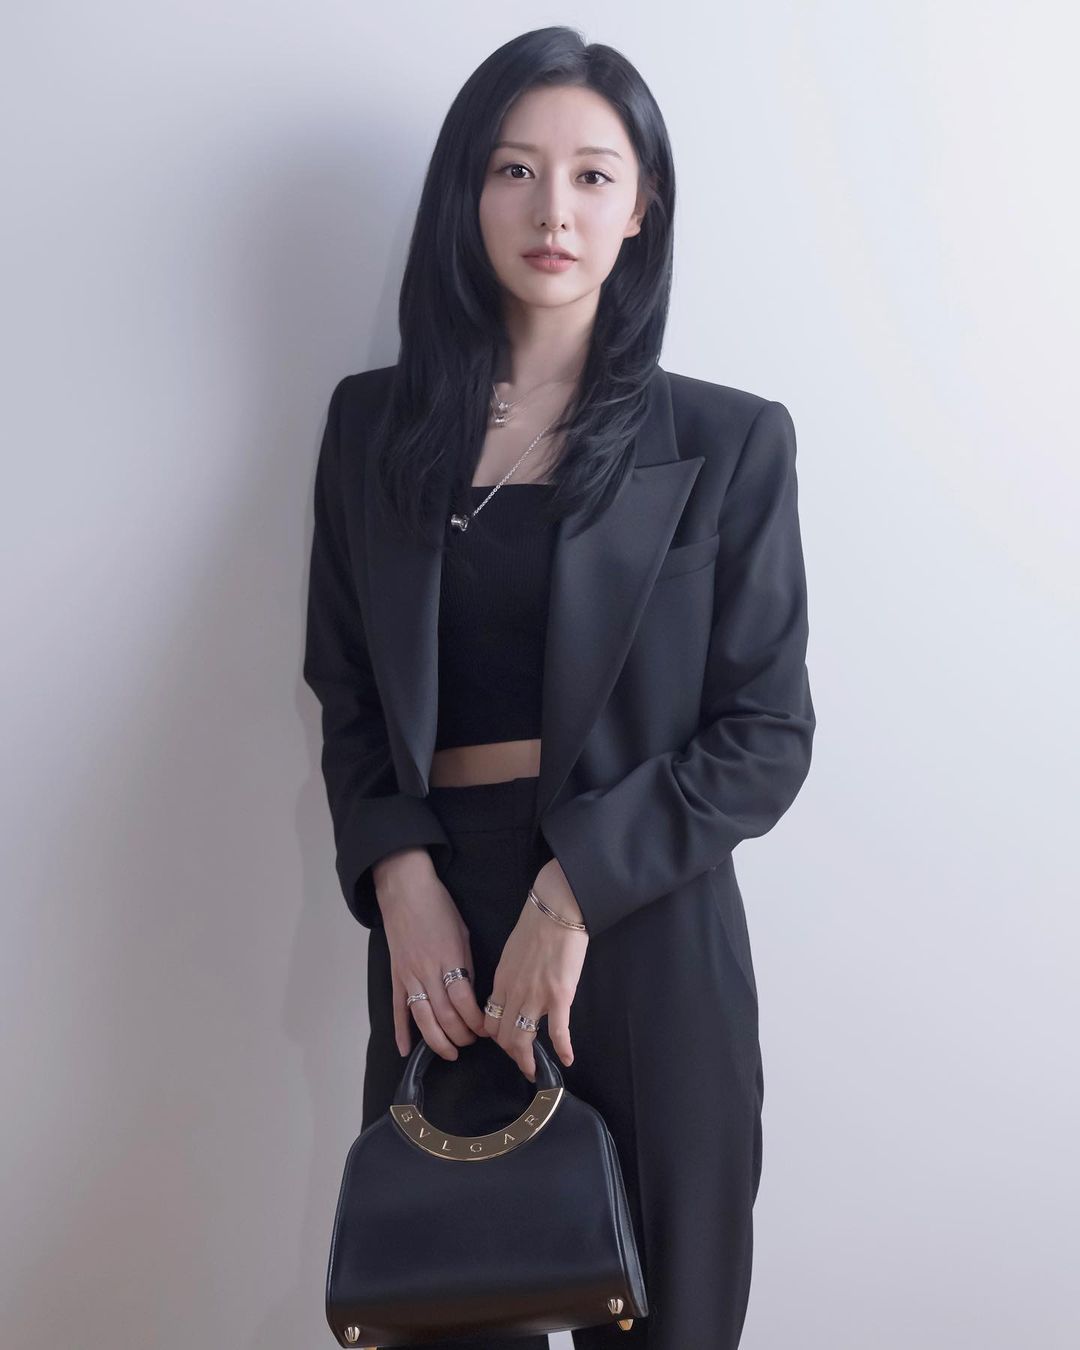 OOTD Casual Ala Kim Ji Won - Crop Top, Blazer, dan Celana